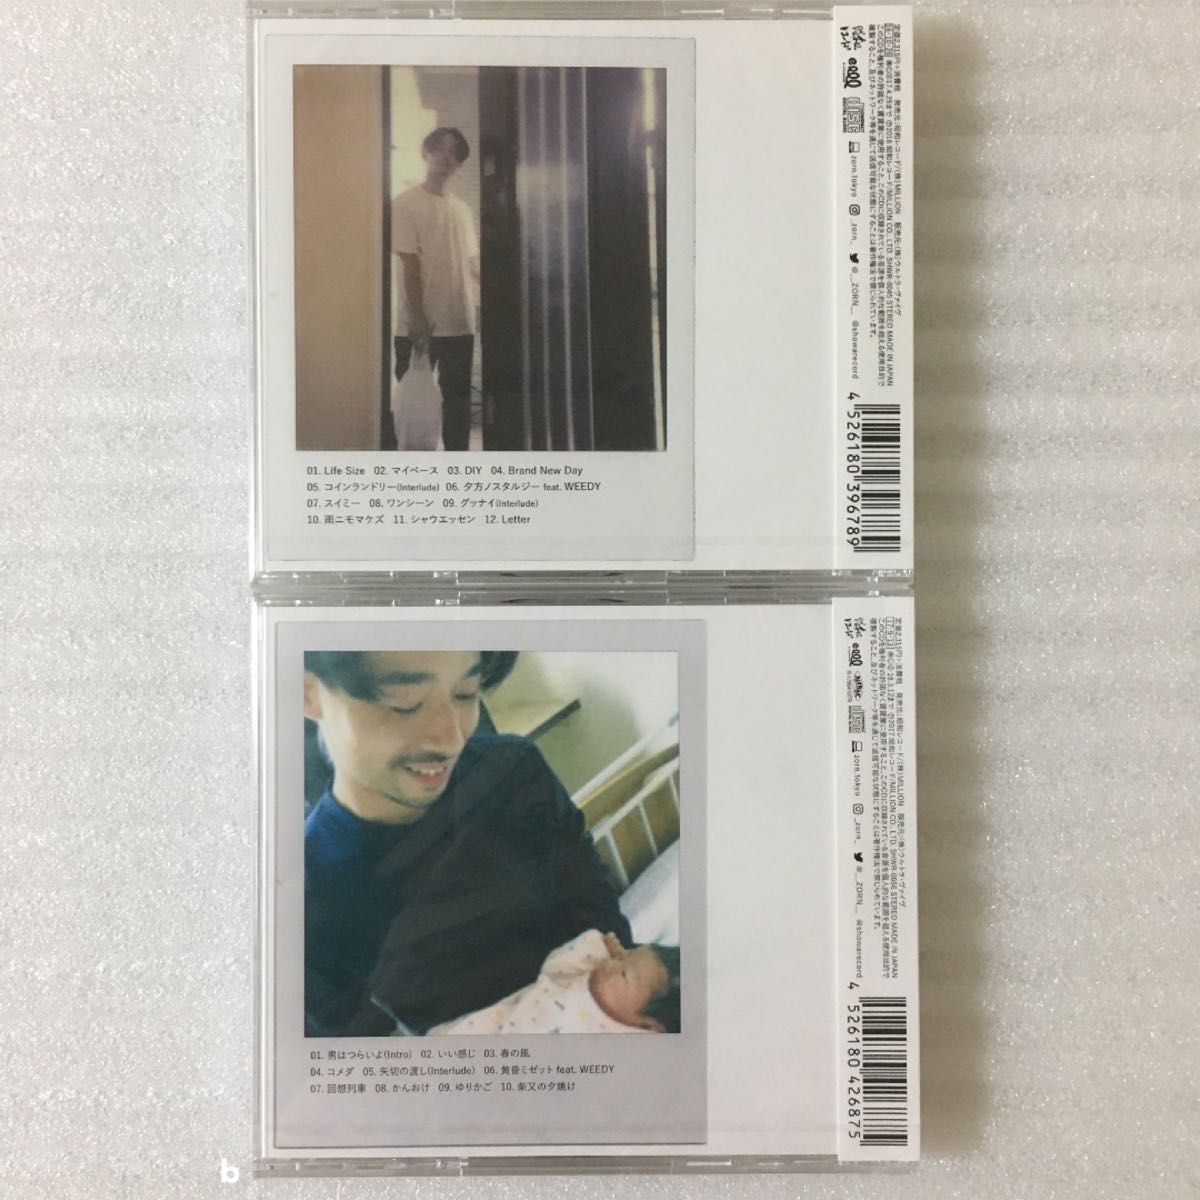 新品未開封 ZORN 「生活日和」「柴又日記」 通常盤 CD 2枚セット